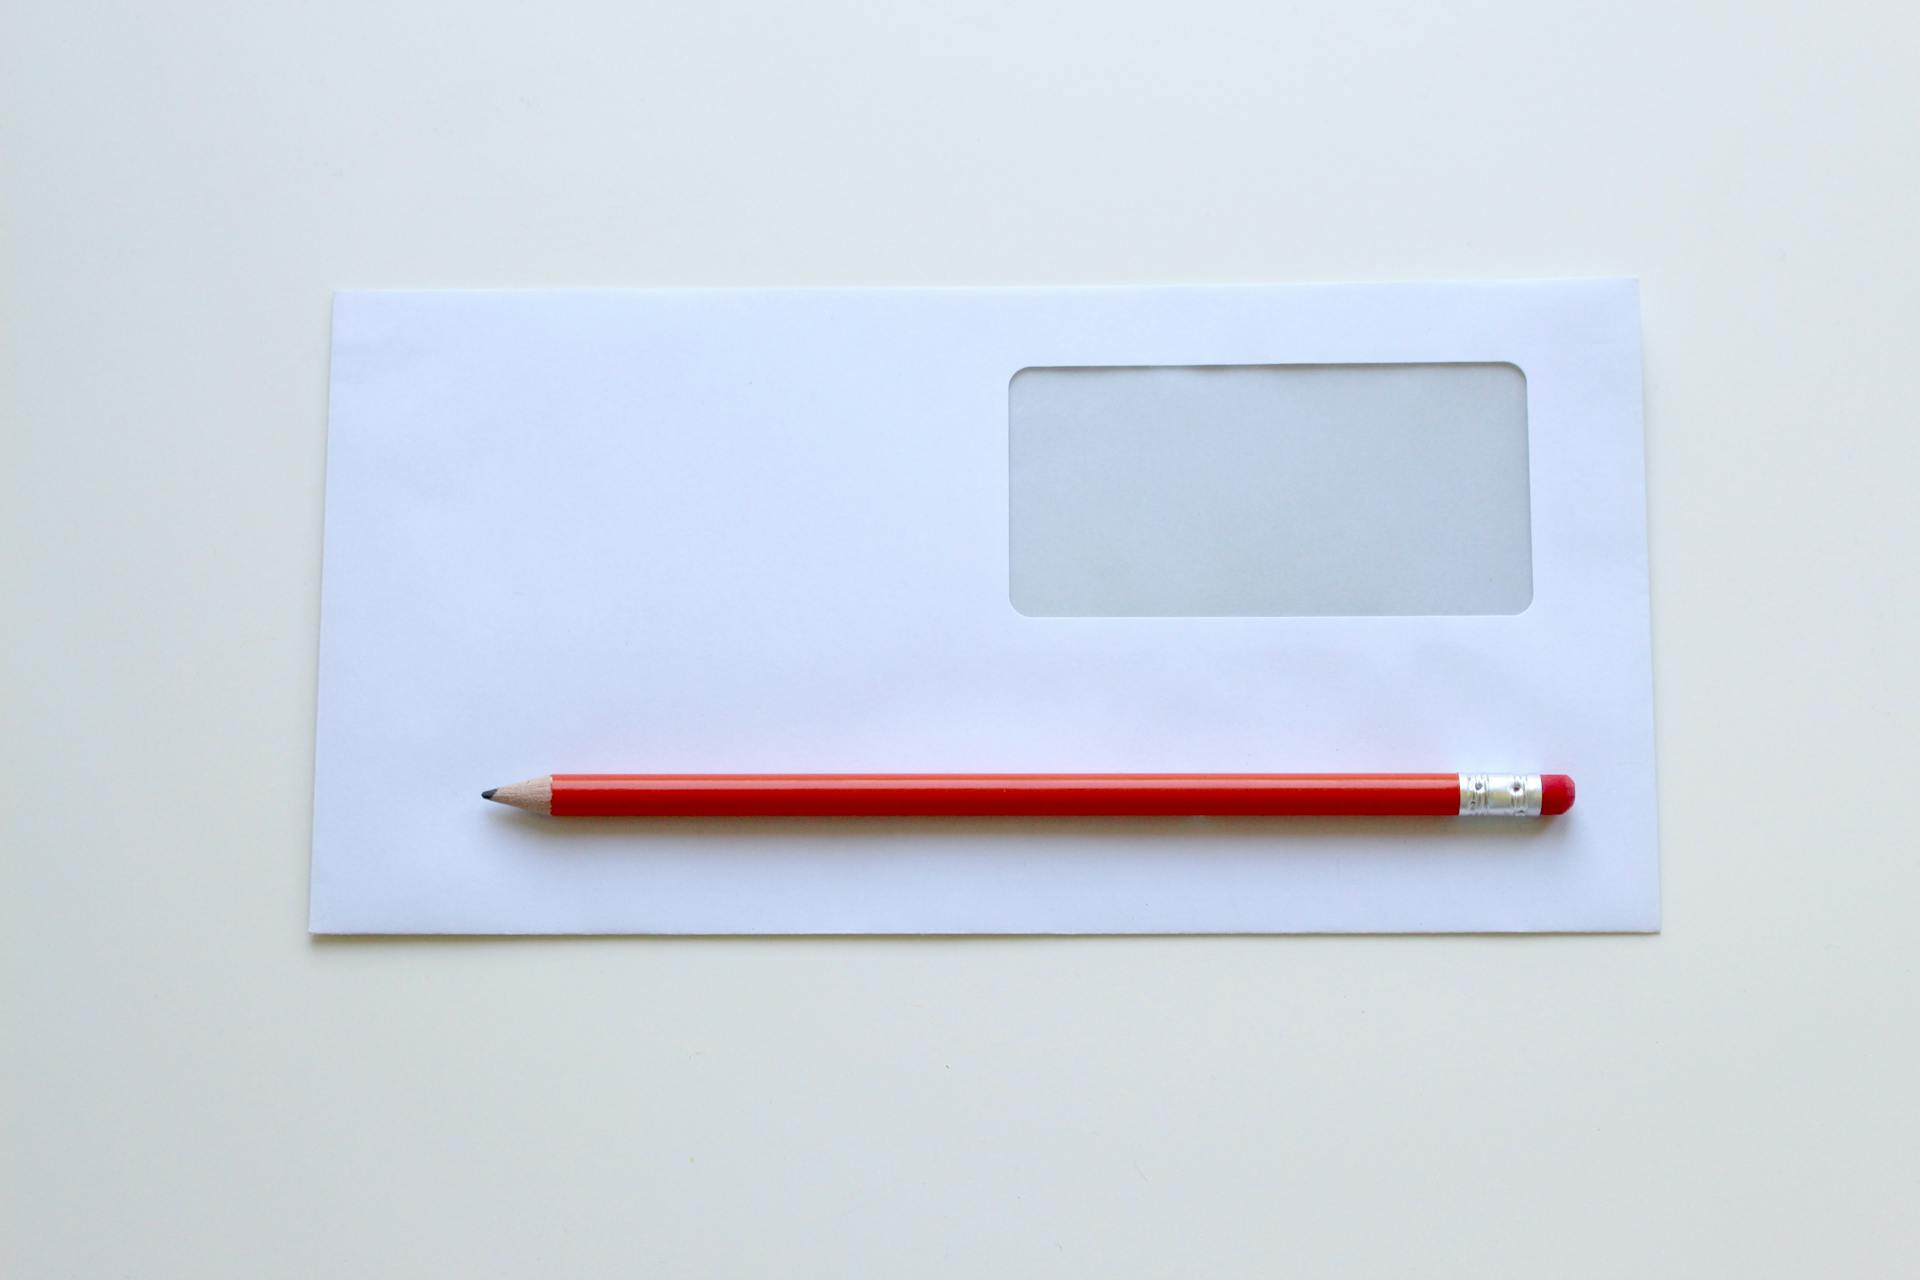 Ein roter Bleistift auf einem weißen Fensterumschlag | Quelle: Pexels